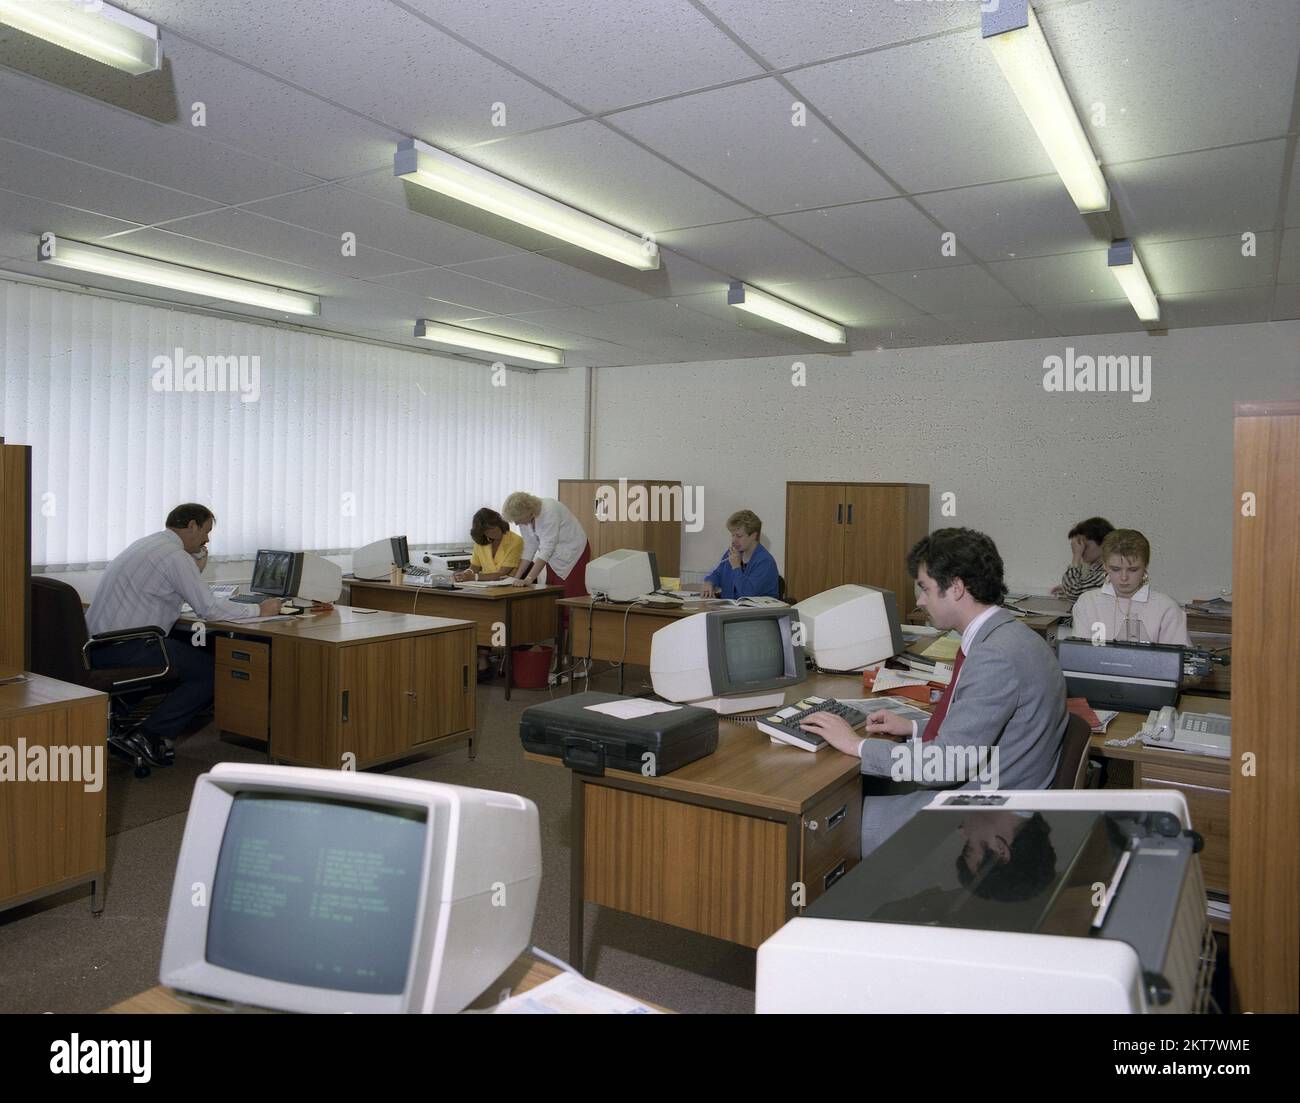 1989s, trabajadores de oficina adultos, históricos, sentados en escritorios de madera en una oficina abierta, usando los terminales de computadoras de la época, Inglaterra, Reino Unido. Una de las empleadas está utilizando una máquina de escribir Olympia International. Foto de stock